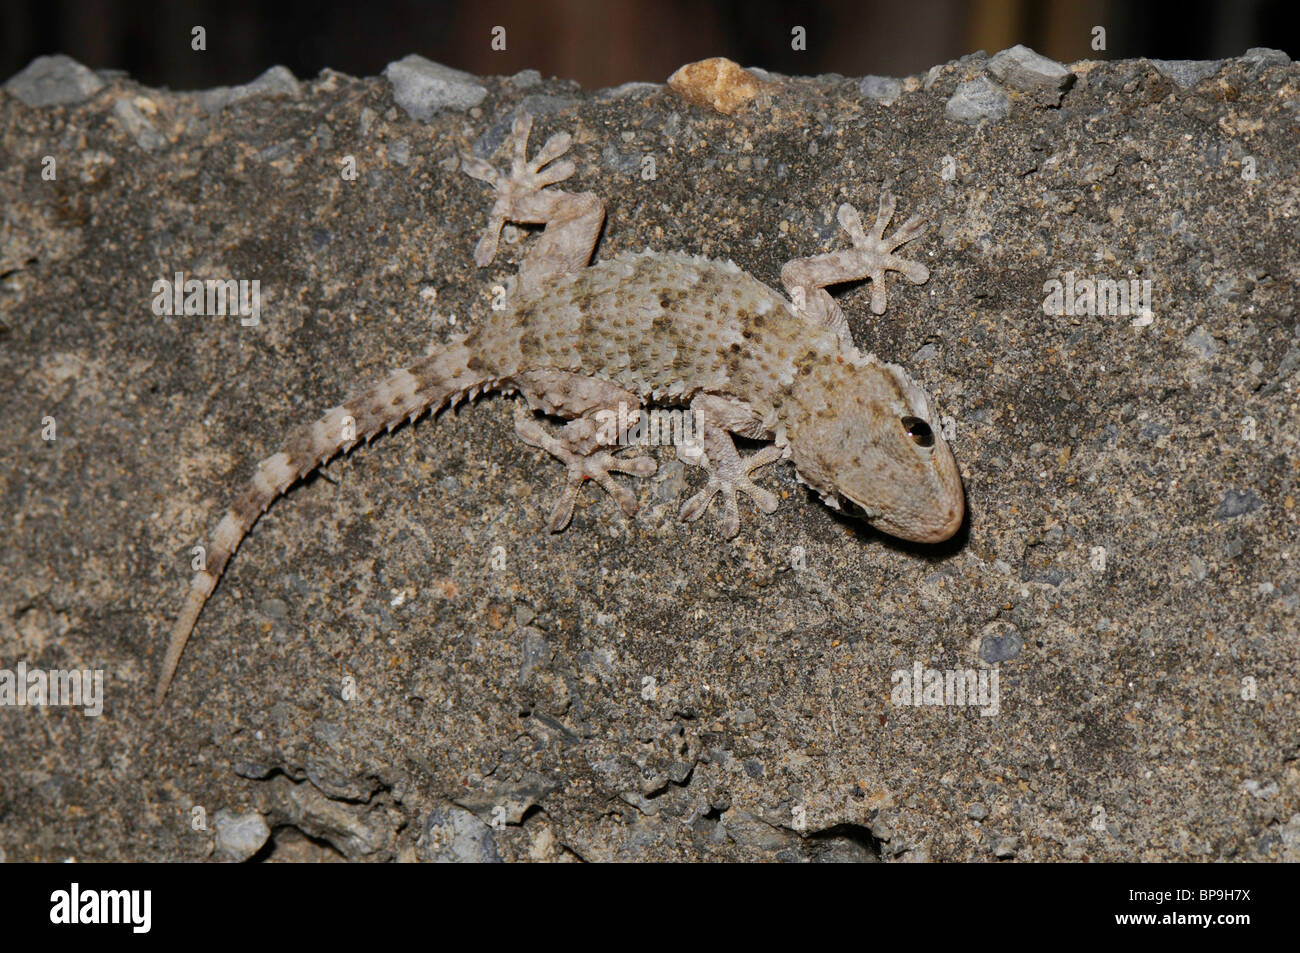 Parete comune geco, Moorish gecko (Tarentola mauritanica), singoli a parete di roccia, Spagna, Andalusia Foto Stock